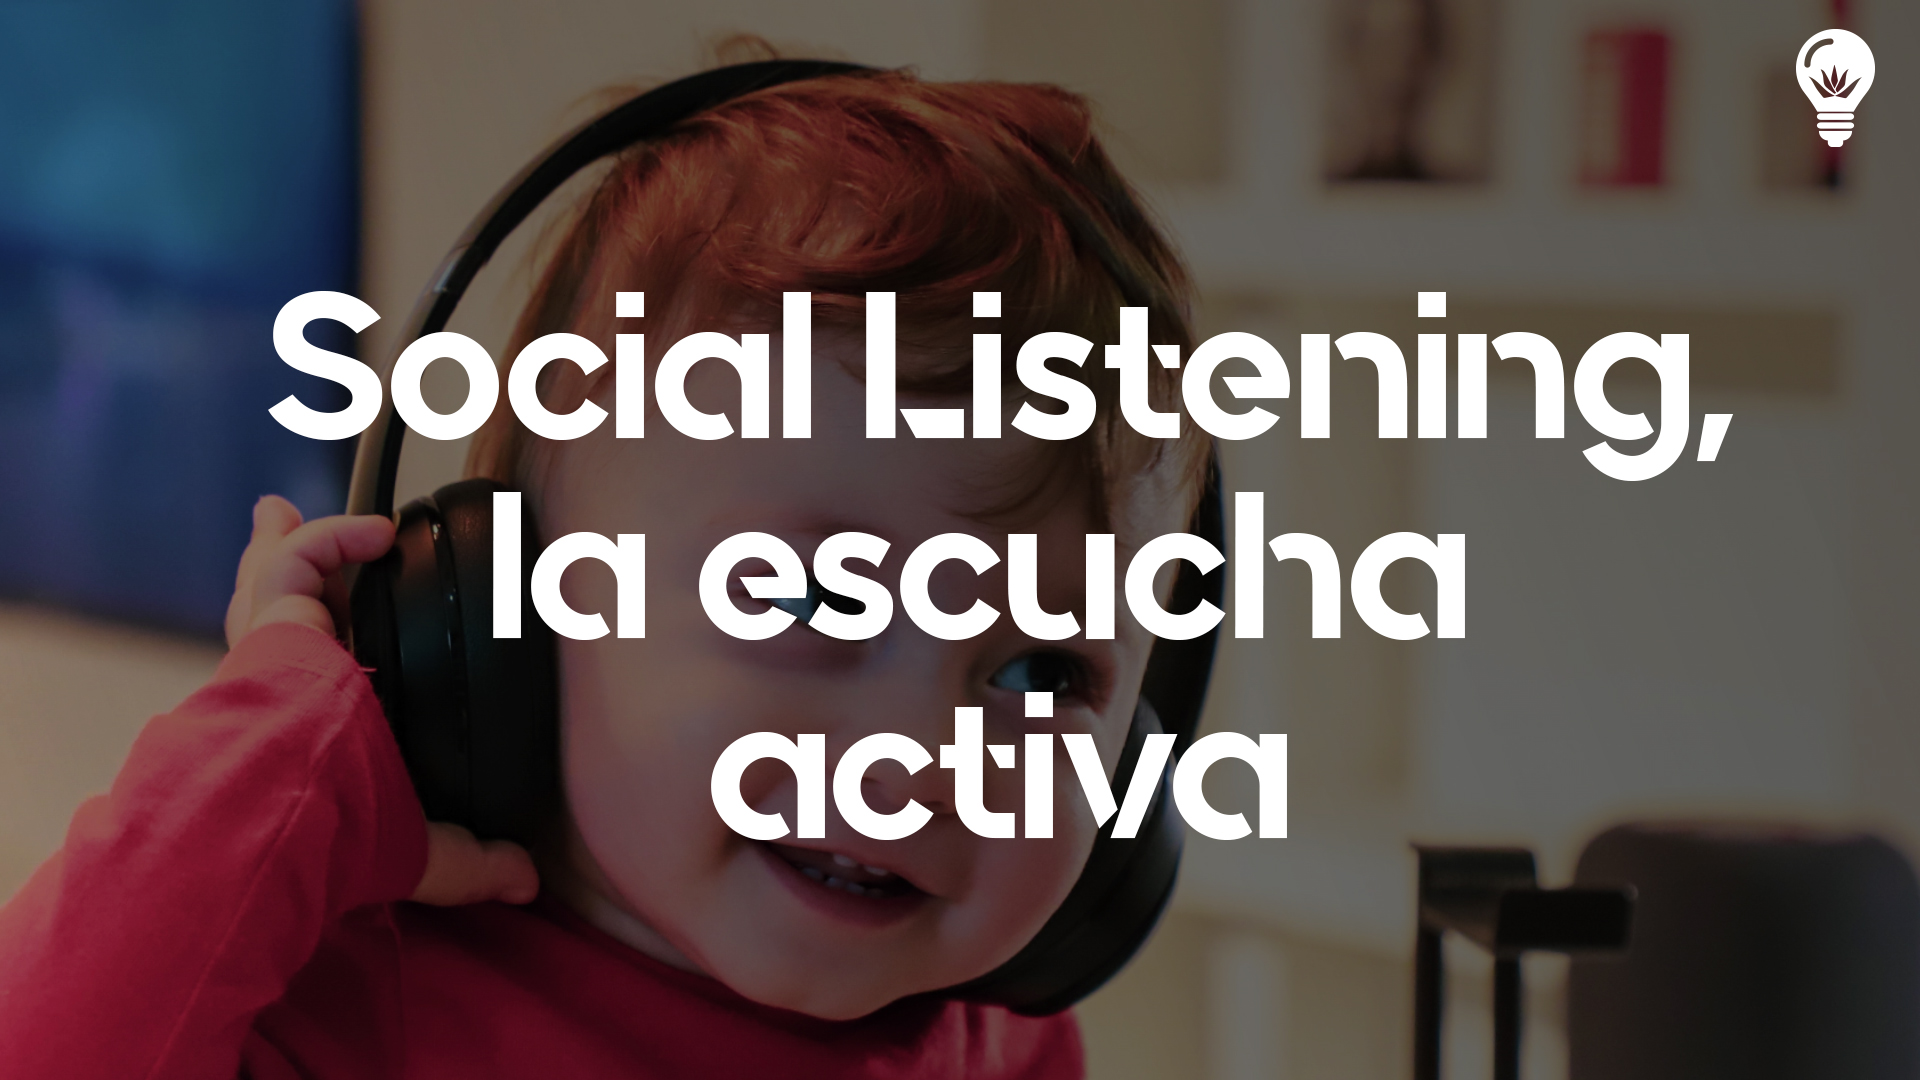 Social media listening